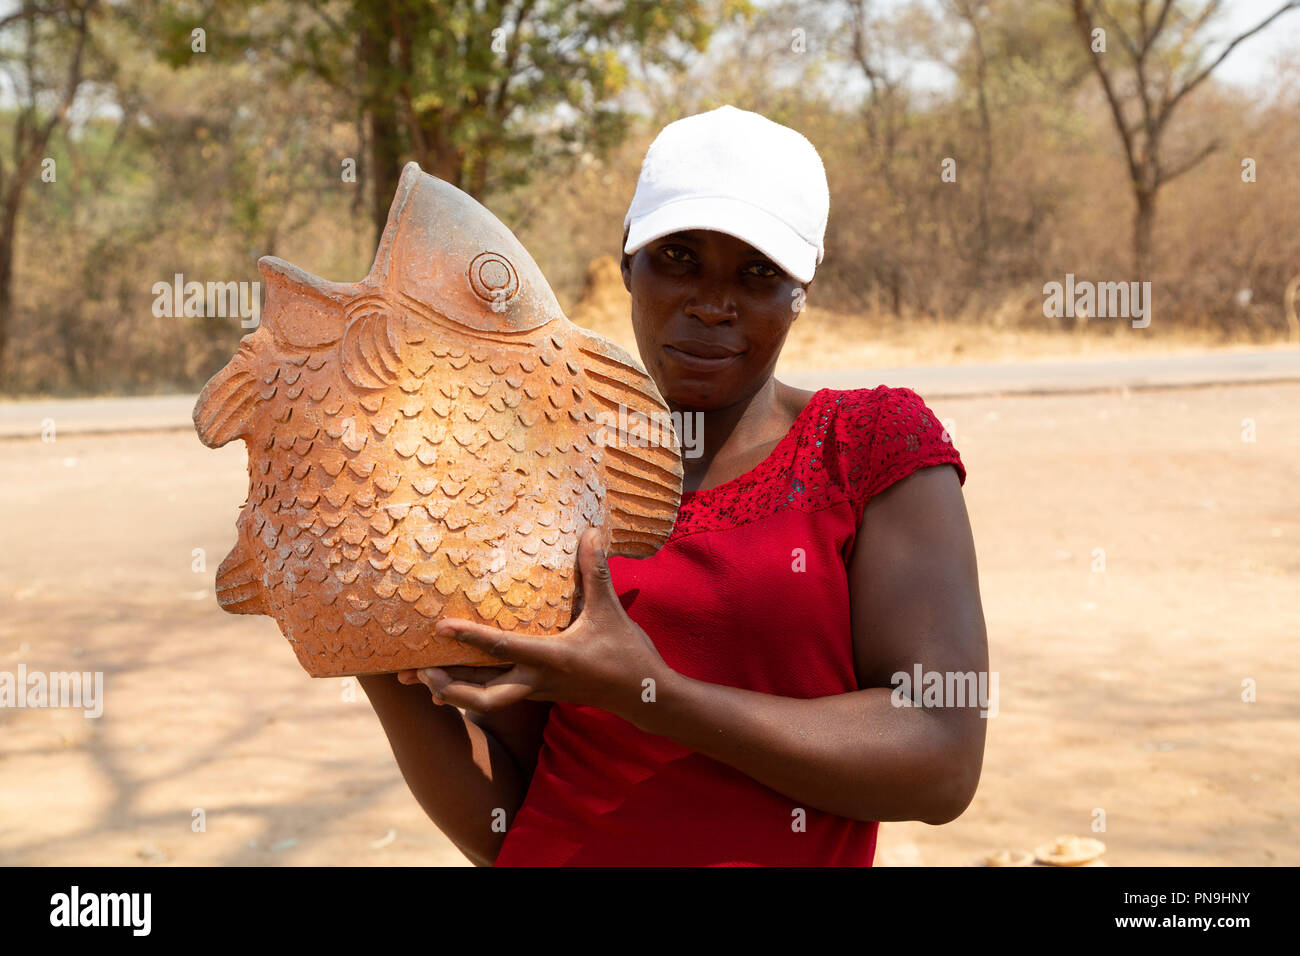 Una donna visualizza ceramica presso una strada stallo in Zimbabwe. Il pezzo è nella forma di un pesce. Foto Stock